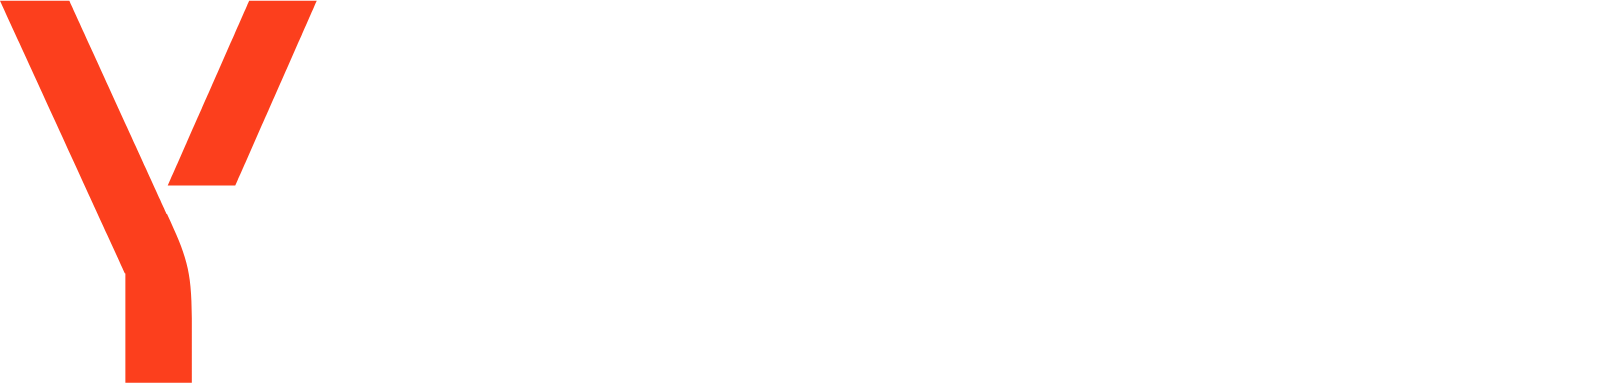 Yandex Logo groß für dunkle Hintergründe (transparentes PNG)